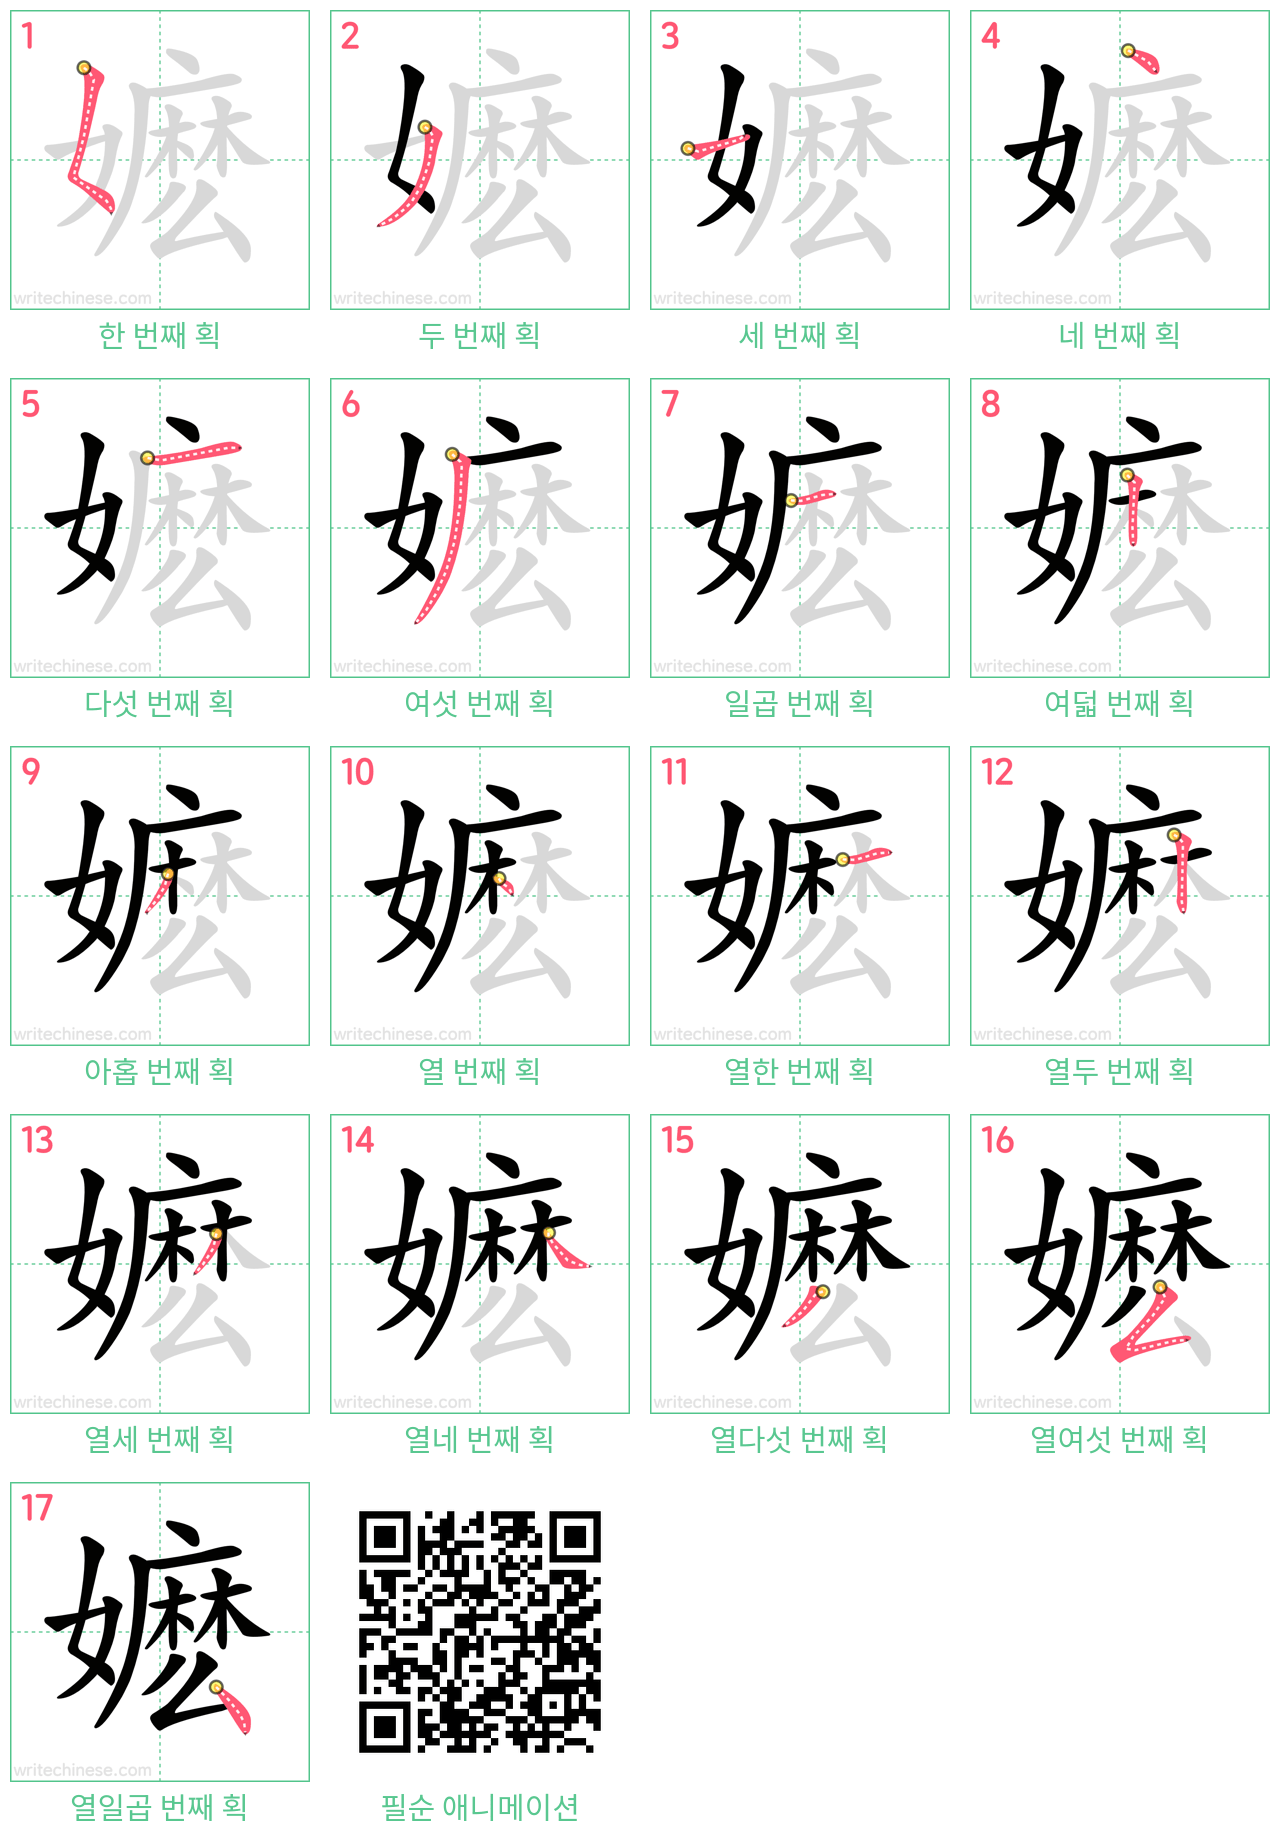 嬷 step-by-step stroke order diagrams